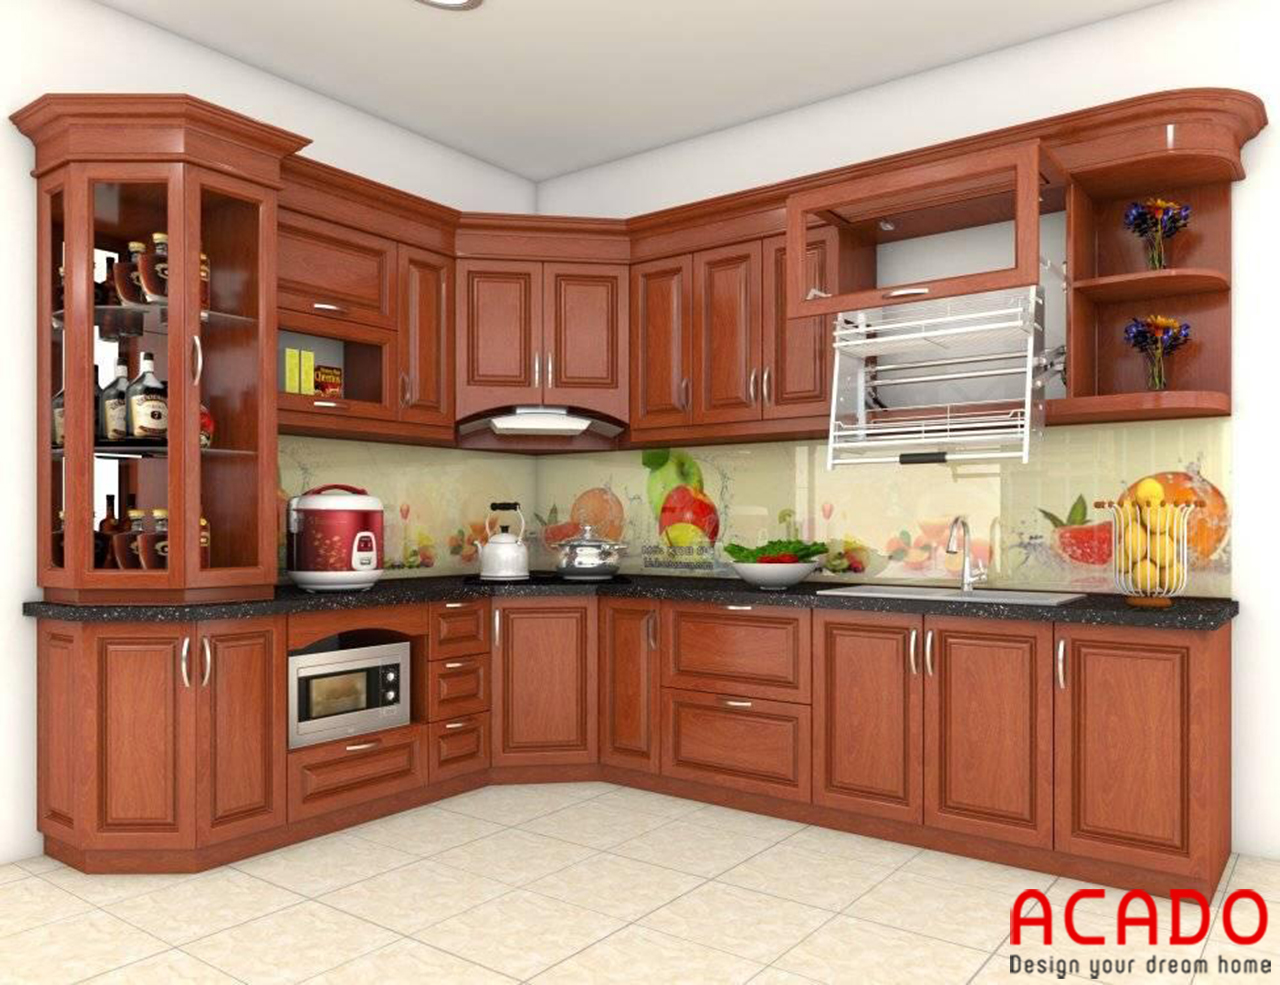 Sử dụng kính ốp bếp 3D tạo nên một không gian sống động trong căn bếp gia đình bạn